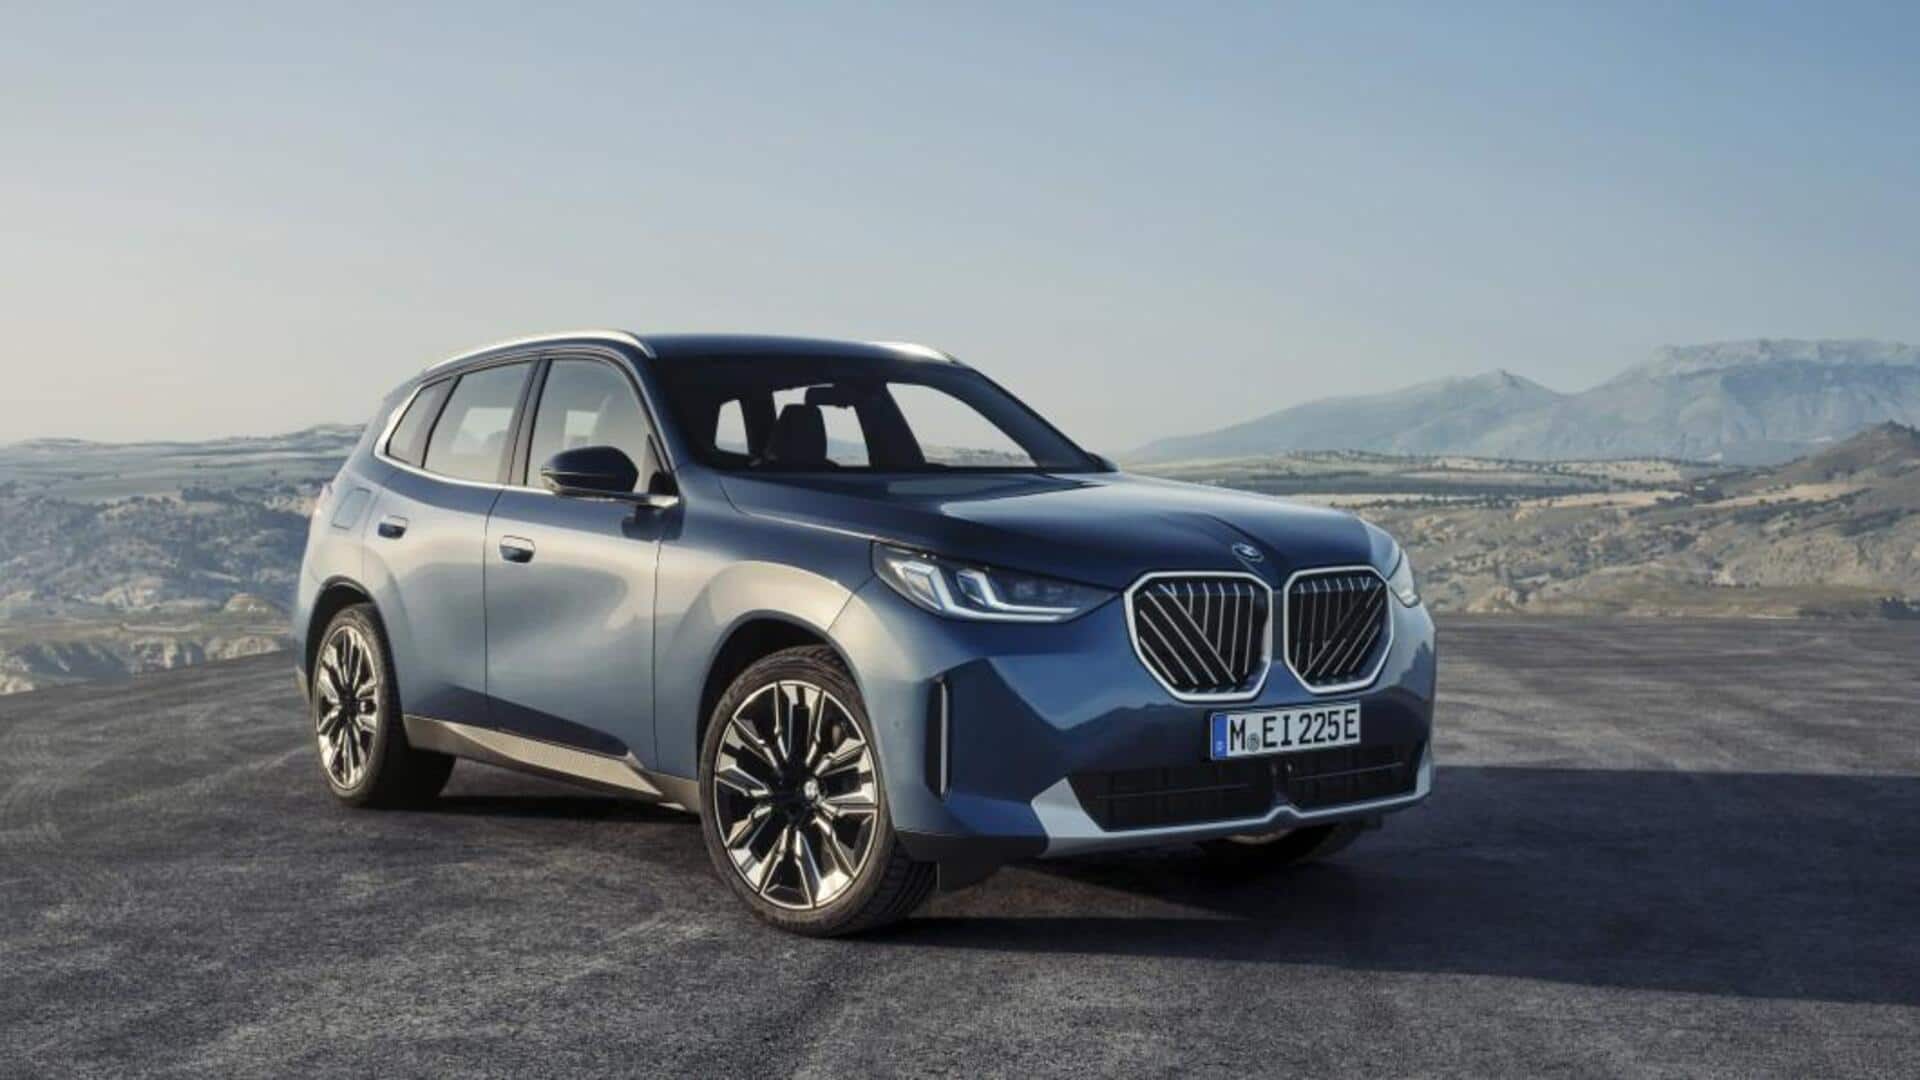 नई BMW X3 से उठा पर्दा, जानिए क्या किया गया है बदलाव 